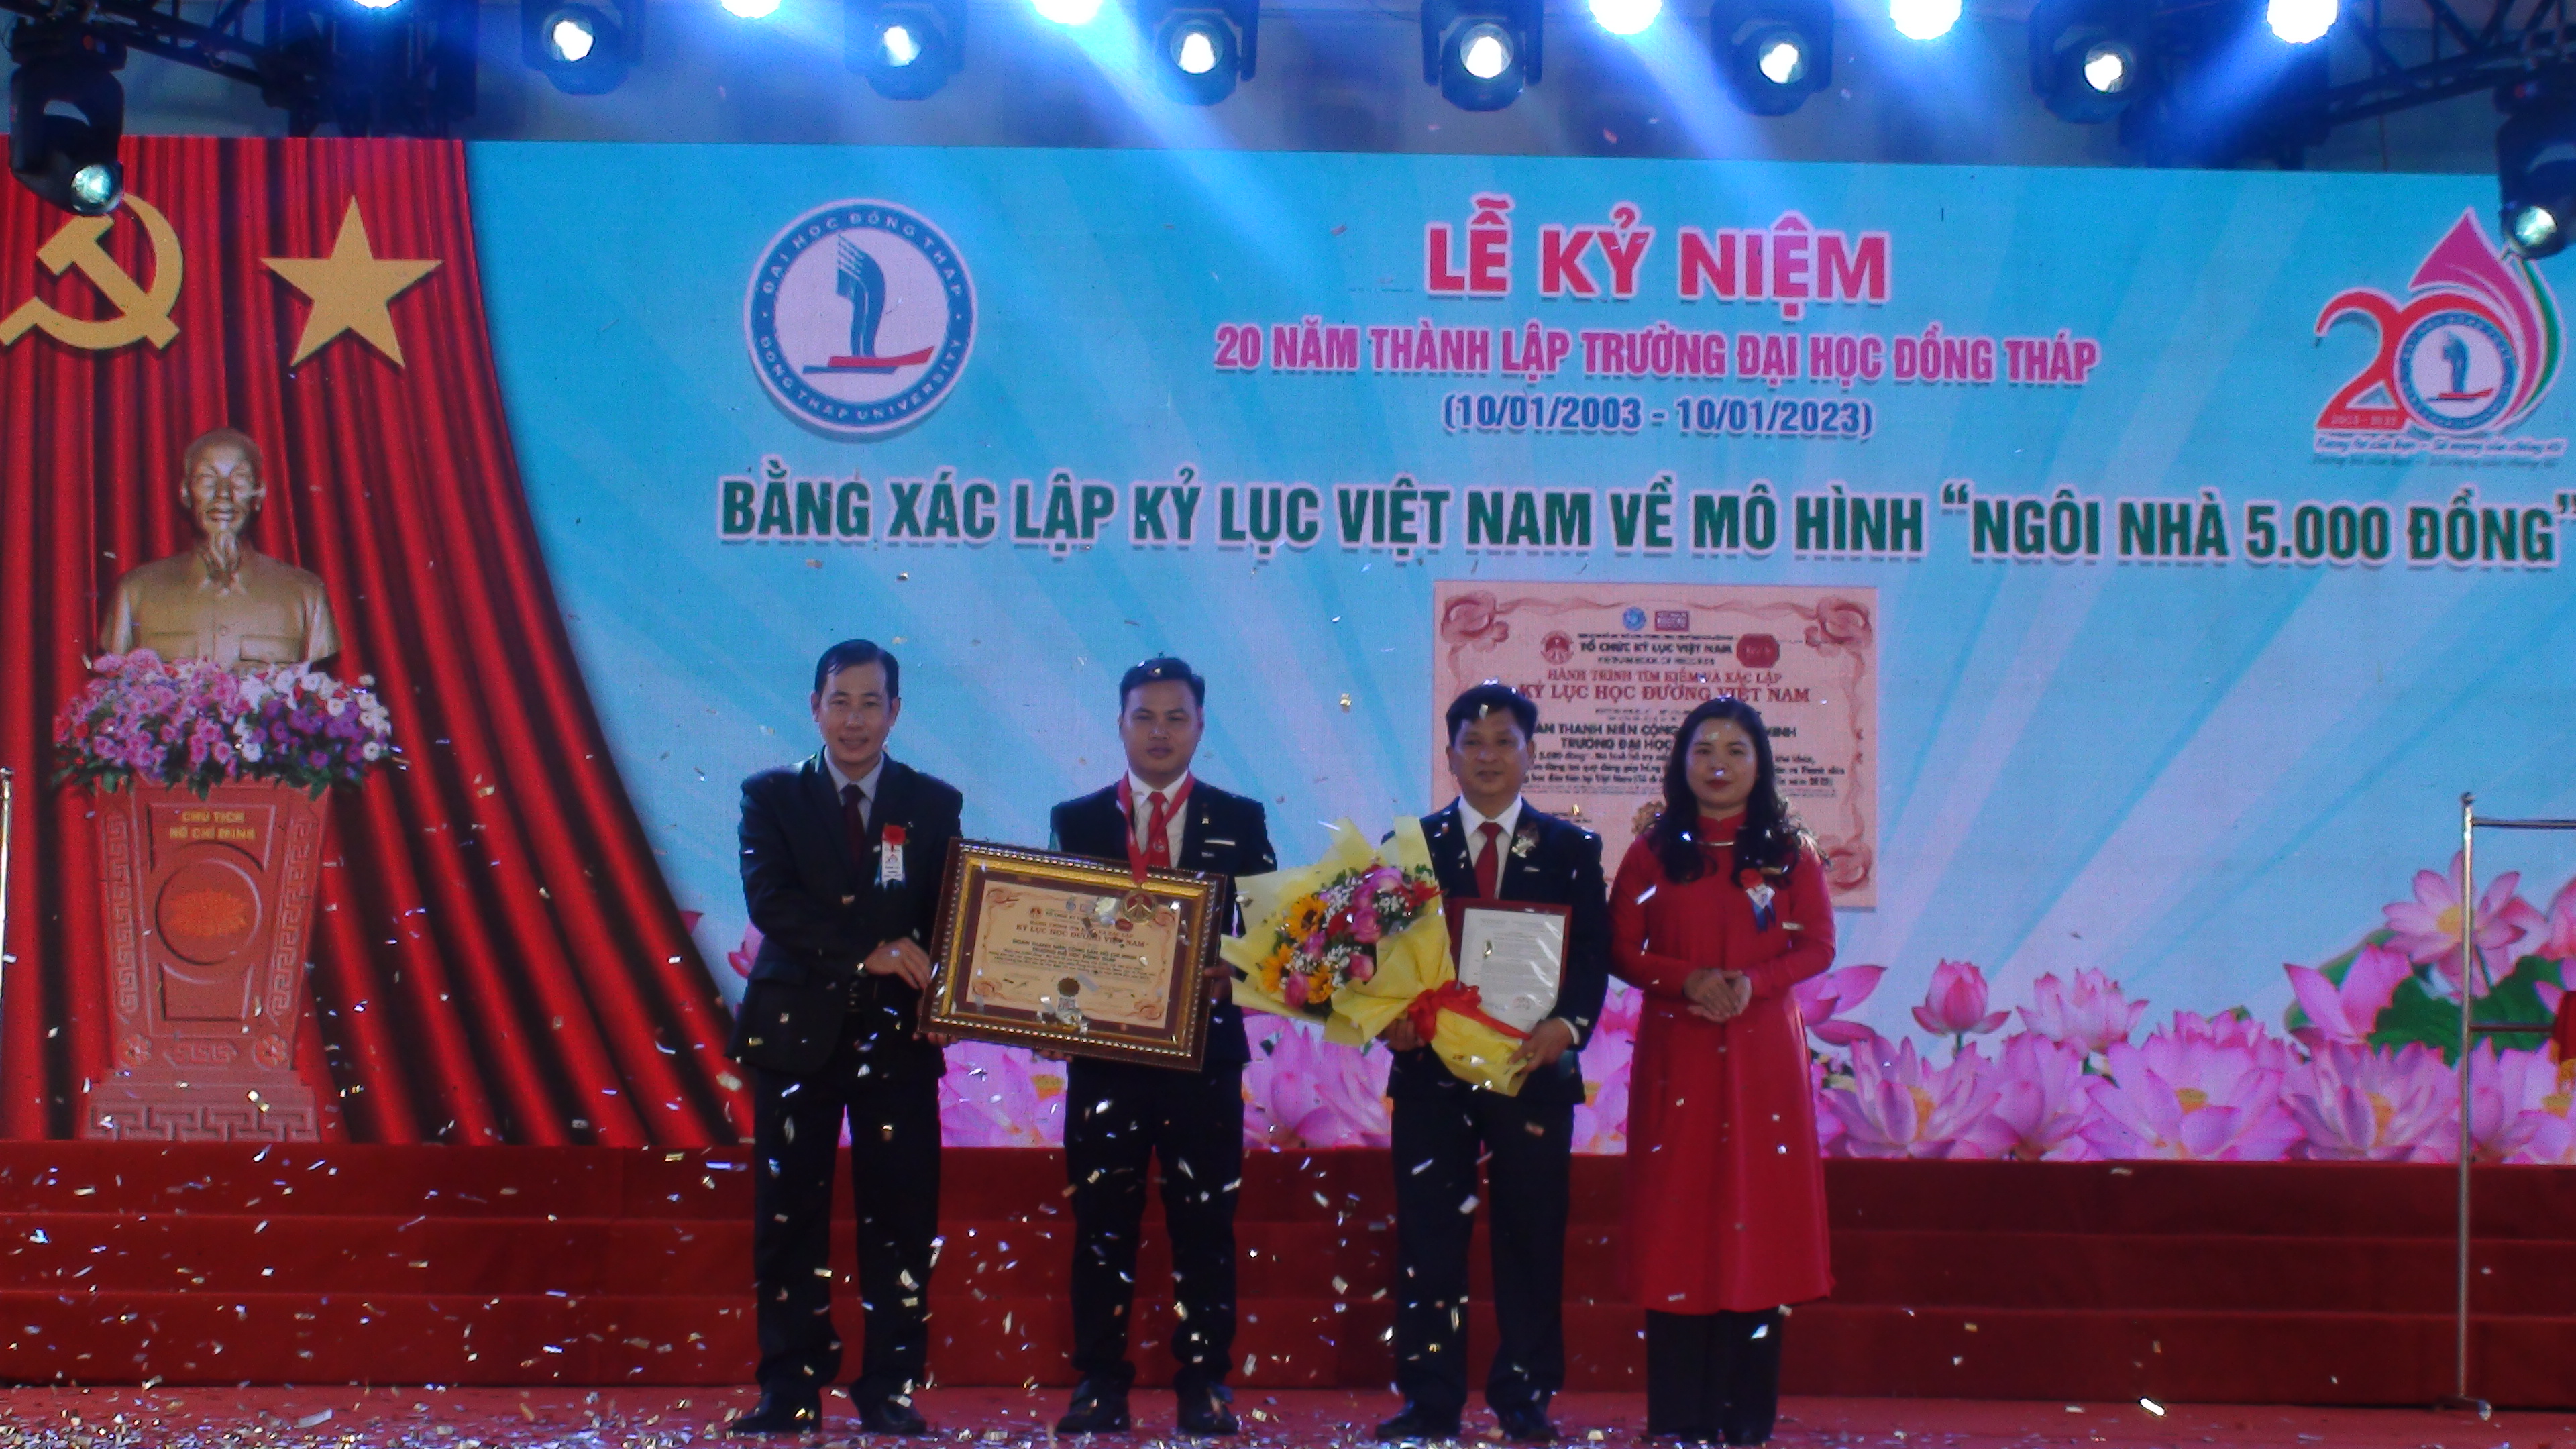 Trường đại học Đồng Tháp nhận kỷ lục Việt Nam - Ảnh 2.